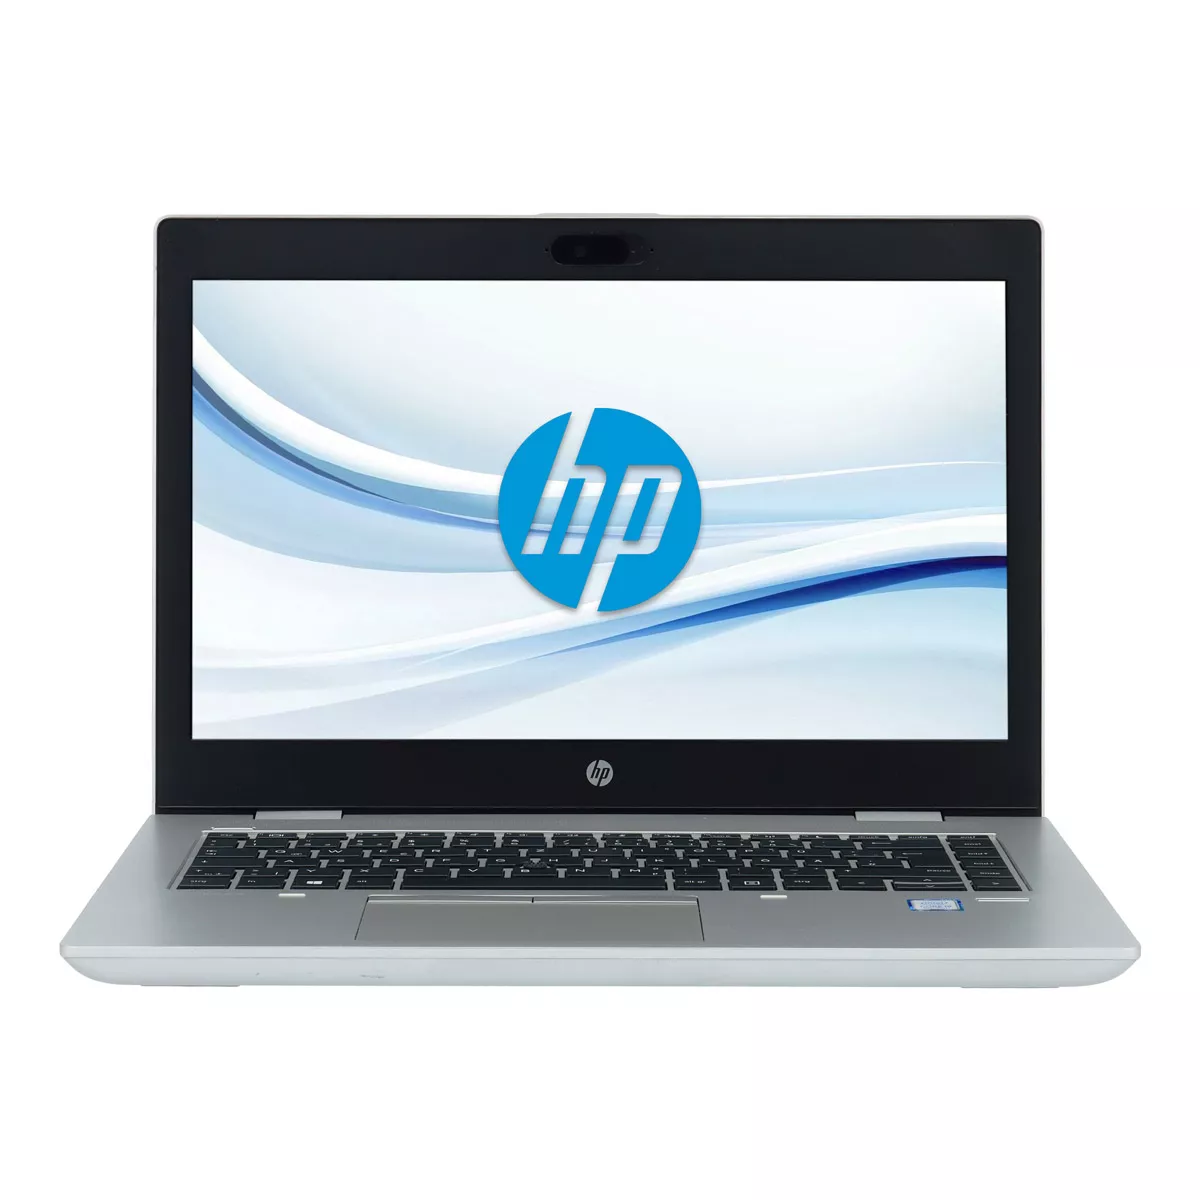 HP ProBook 640 G5 Core i7 8665U Full-HD 8 GB 240 GB M.2 nVME SSD Webcam A